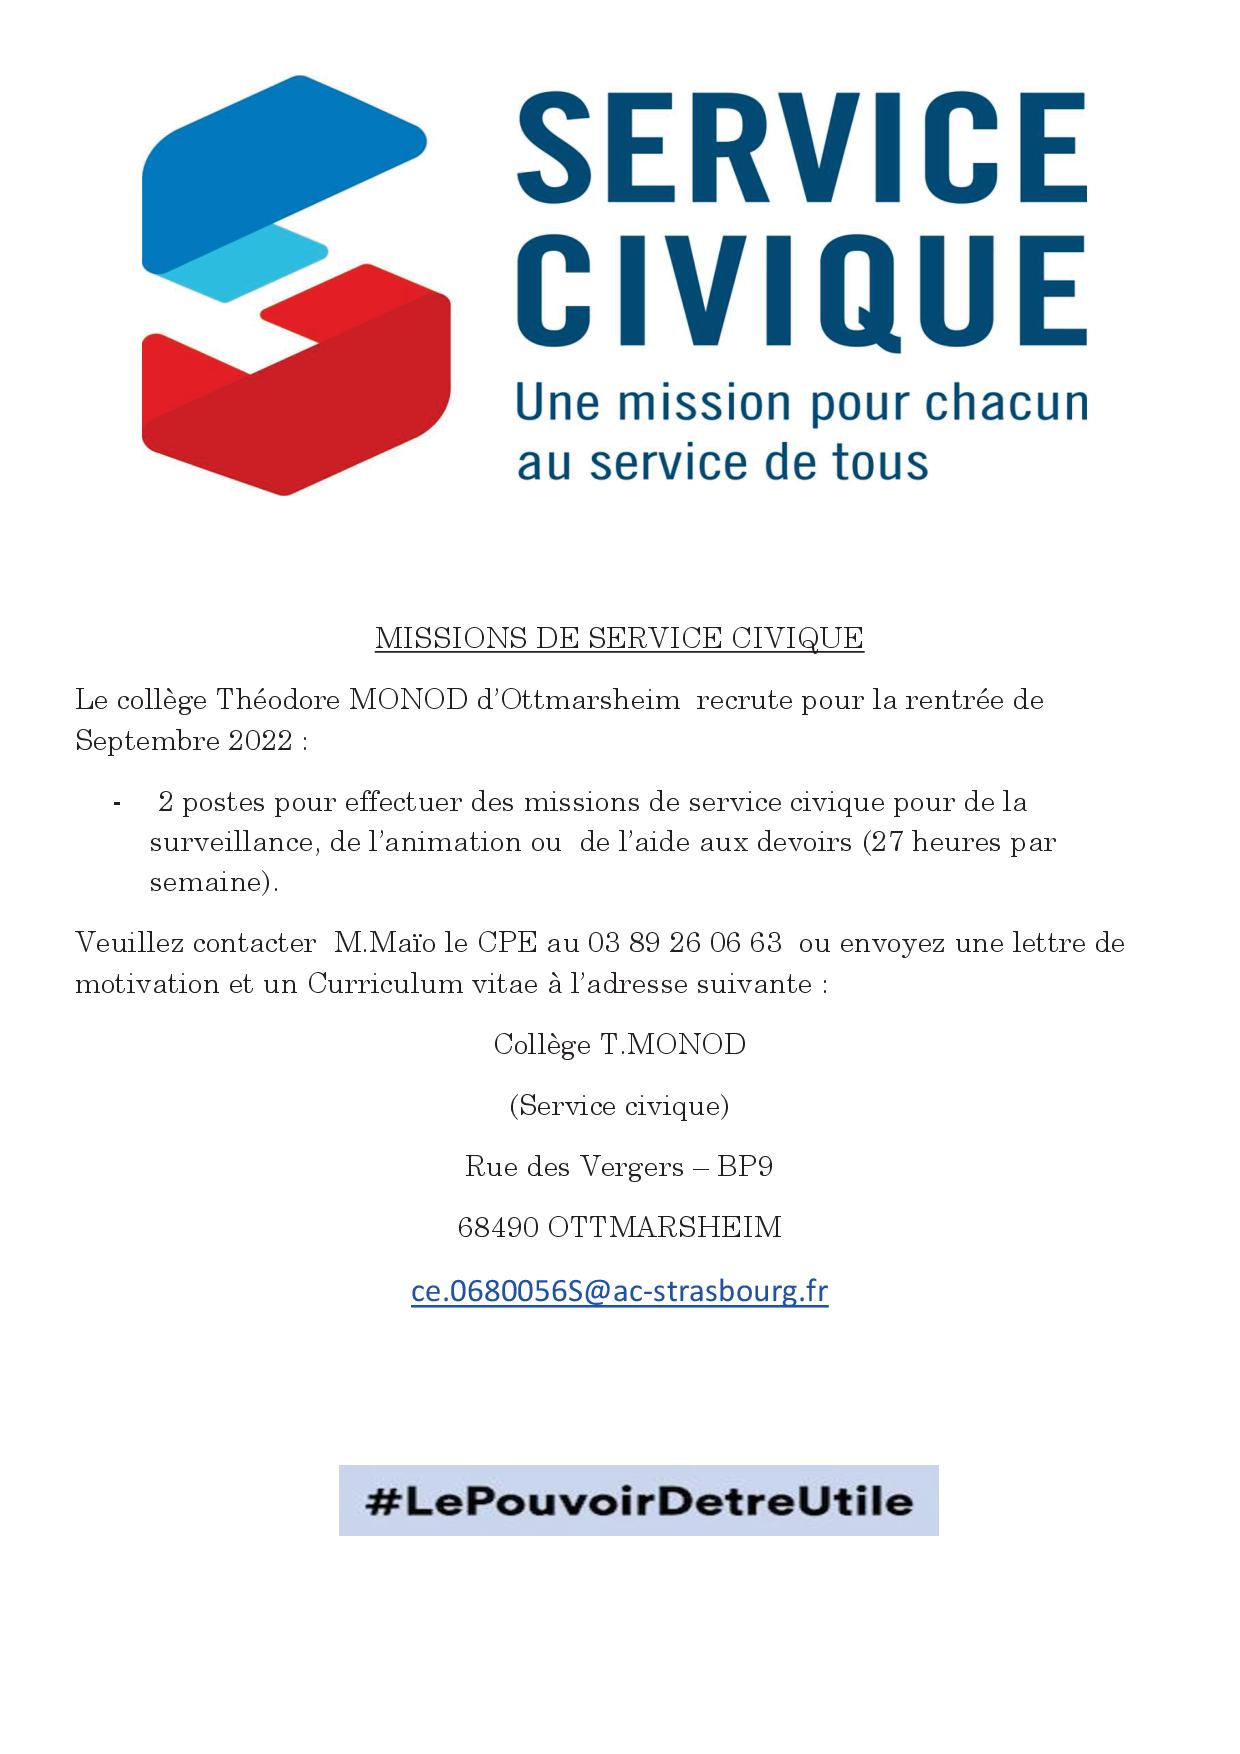 Service civique (3)